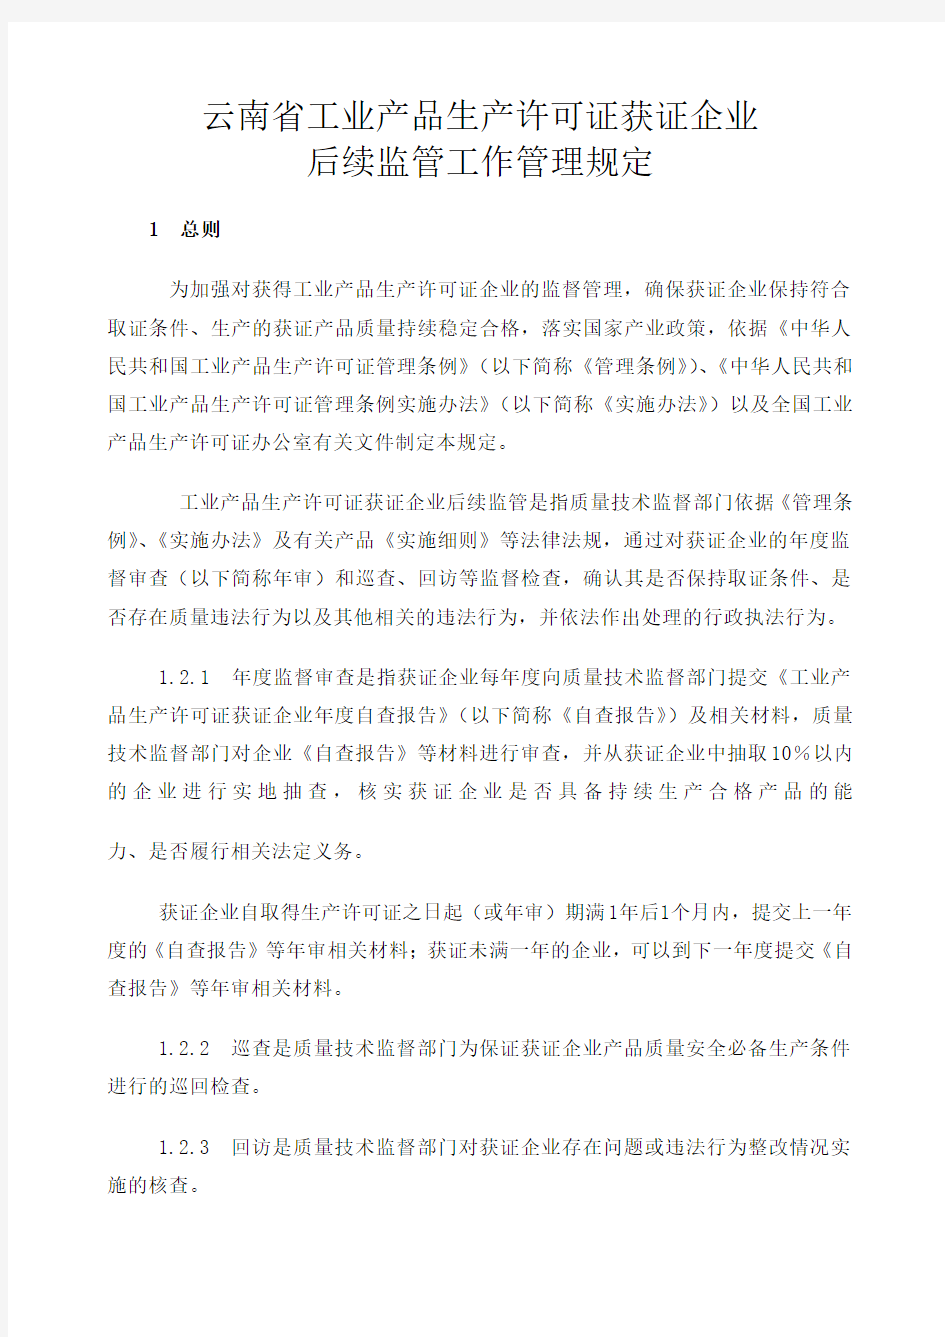 云南省工业产品生产许可证获证企业后续监管工作管理规